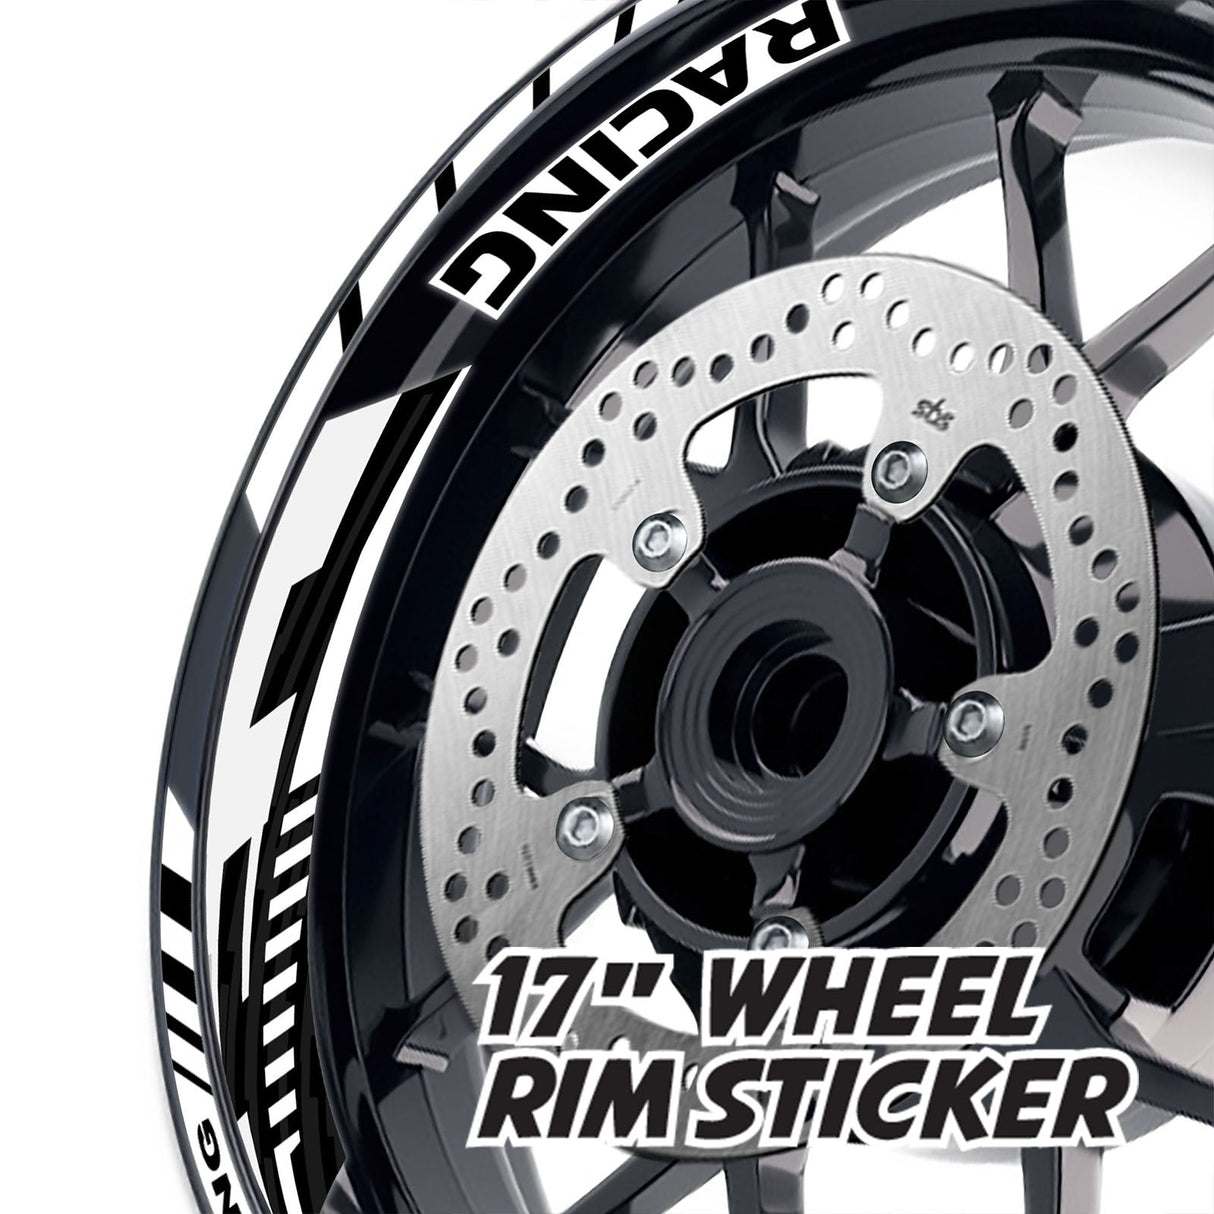 StickerBao White 17 inch GP09 Platinum Inner Edge Rim Sticker Universal Motorcycle Rim Wheel Decal Racing For Yamaha